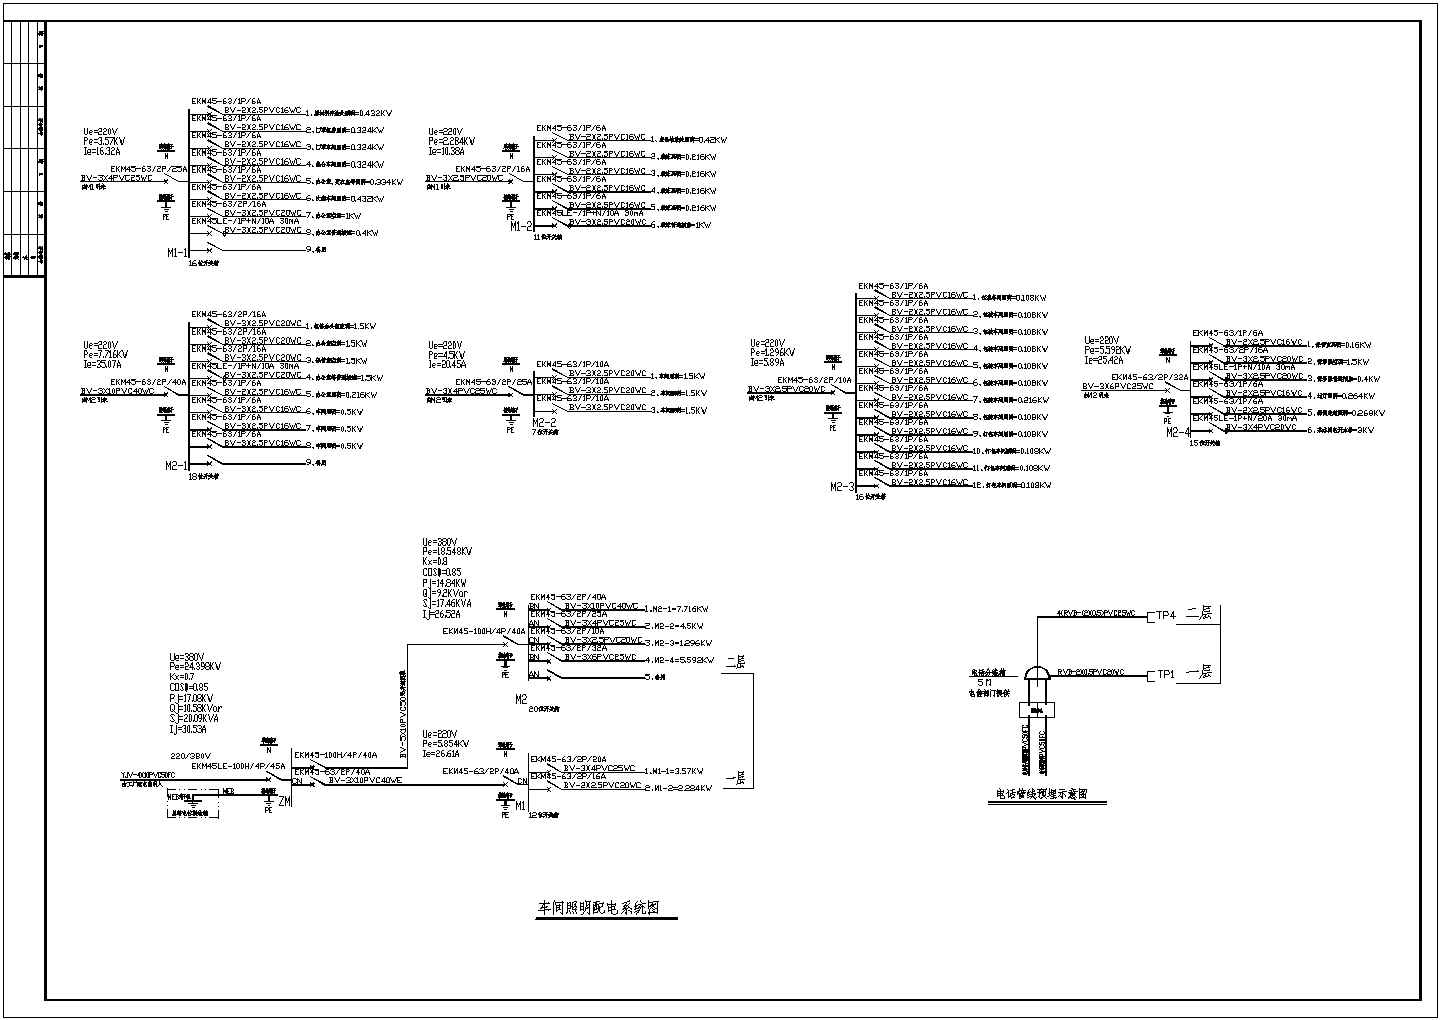 苏州化工园一整套工厂全套电气cad施工设计图(含车间动力配电系统图)